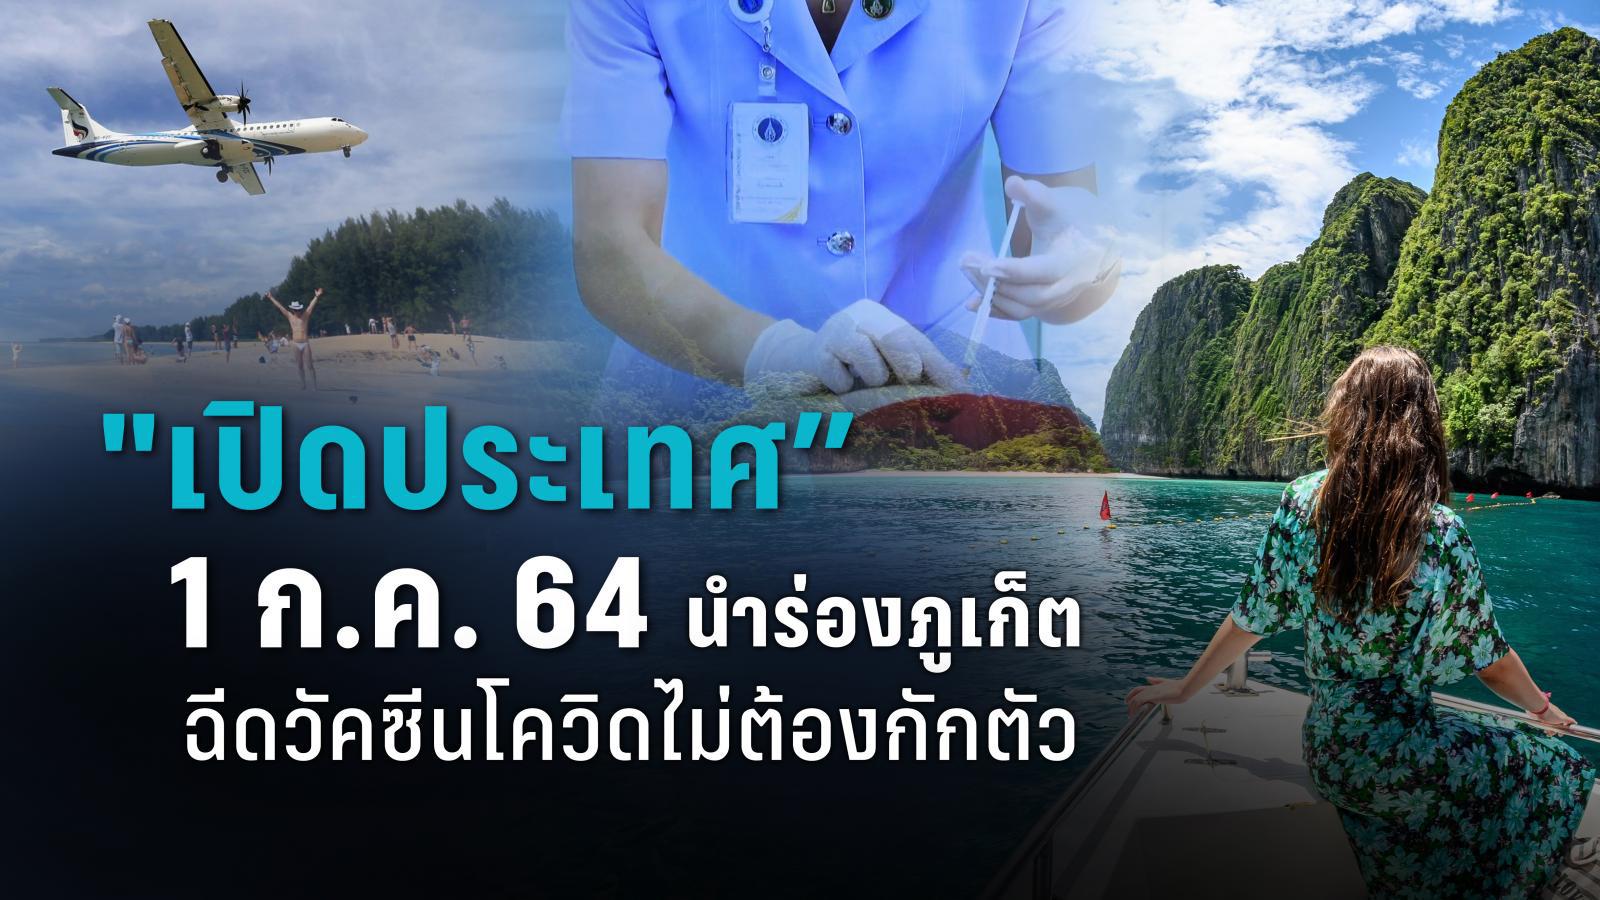 แหล่งท่องเที่ยวไทยสุดปัง เตรียมรับนักท่องเที่ยวที่ฉีดวัคซีนแล้ว